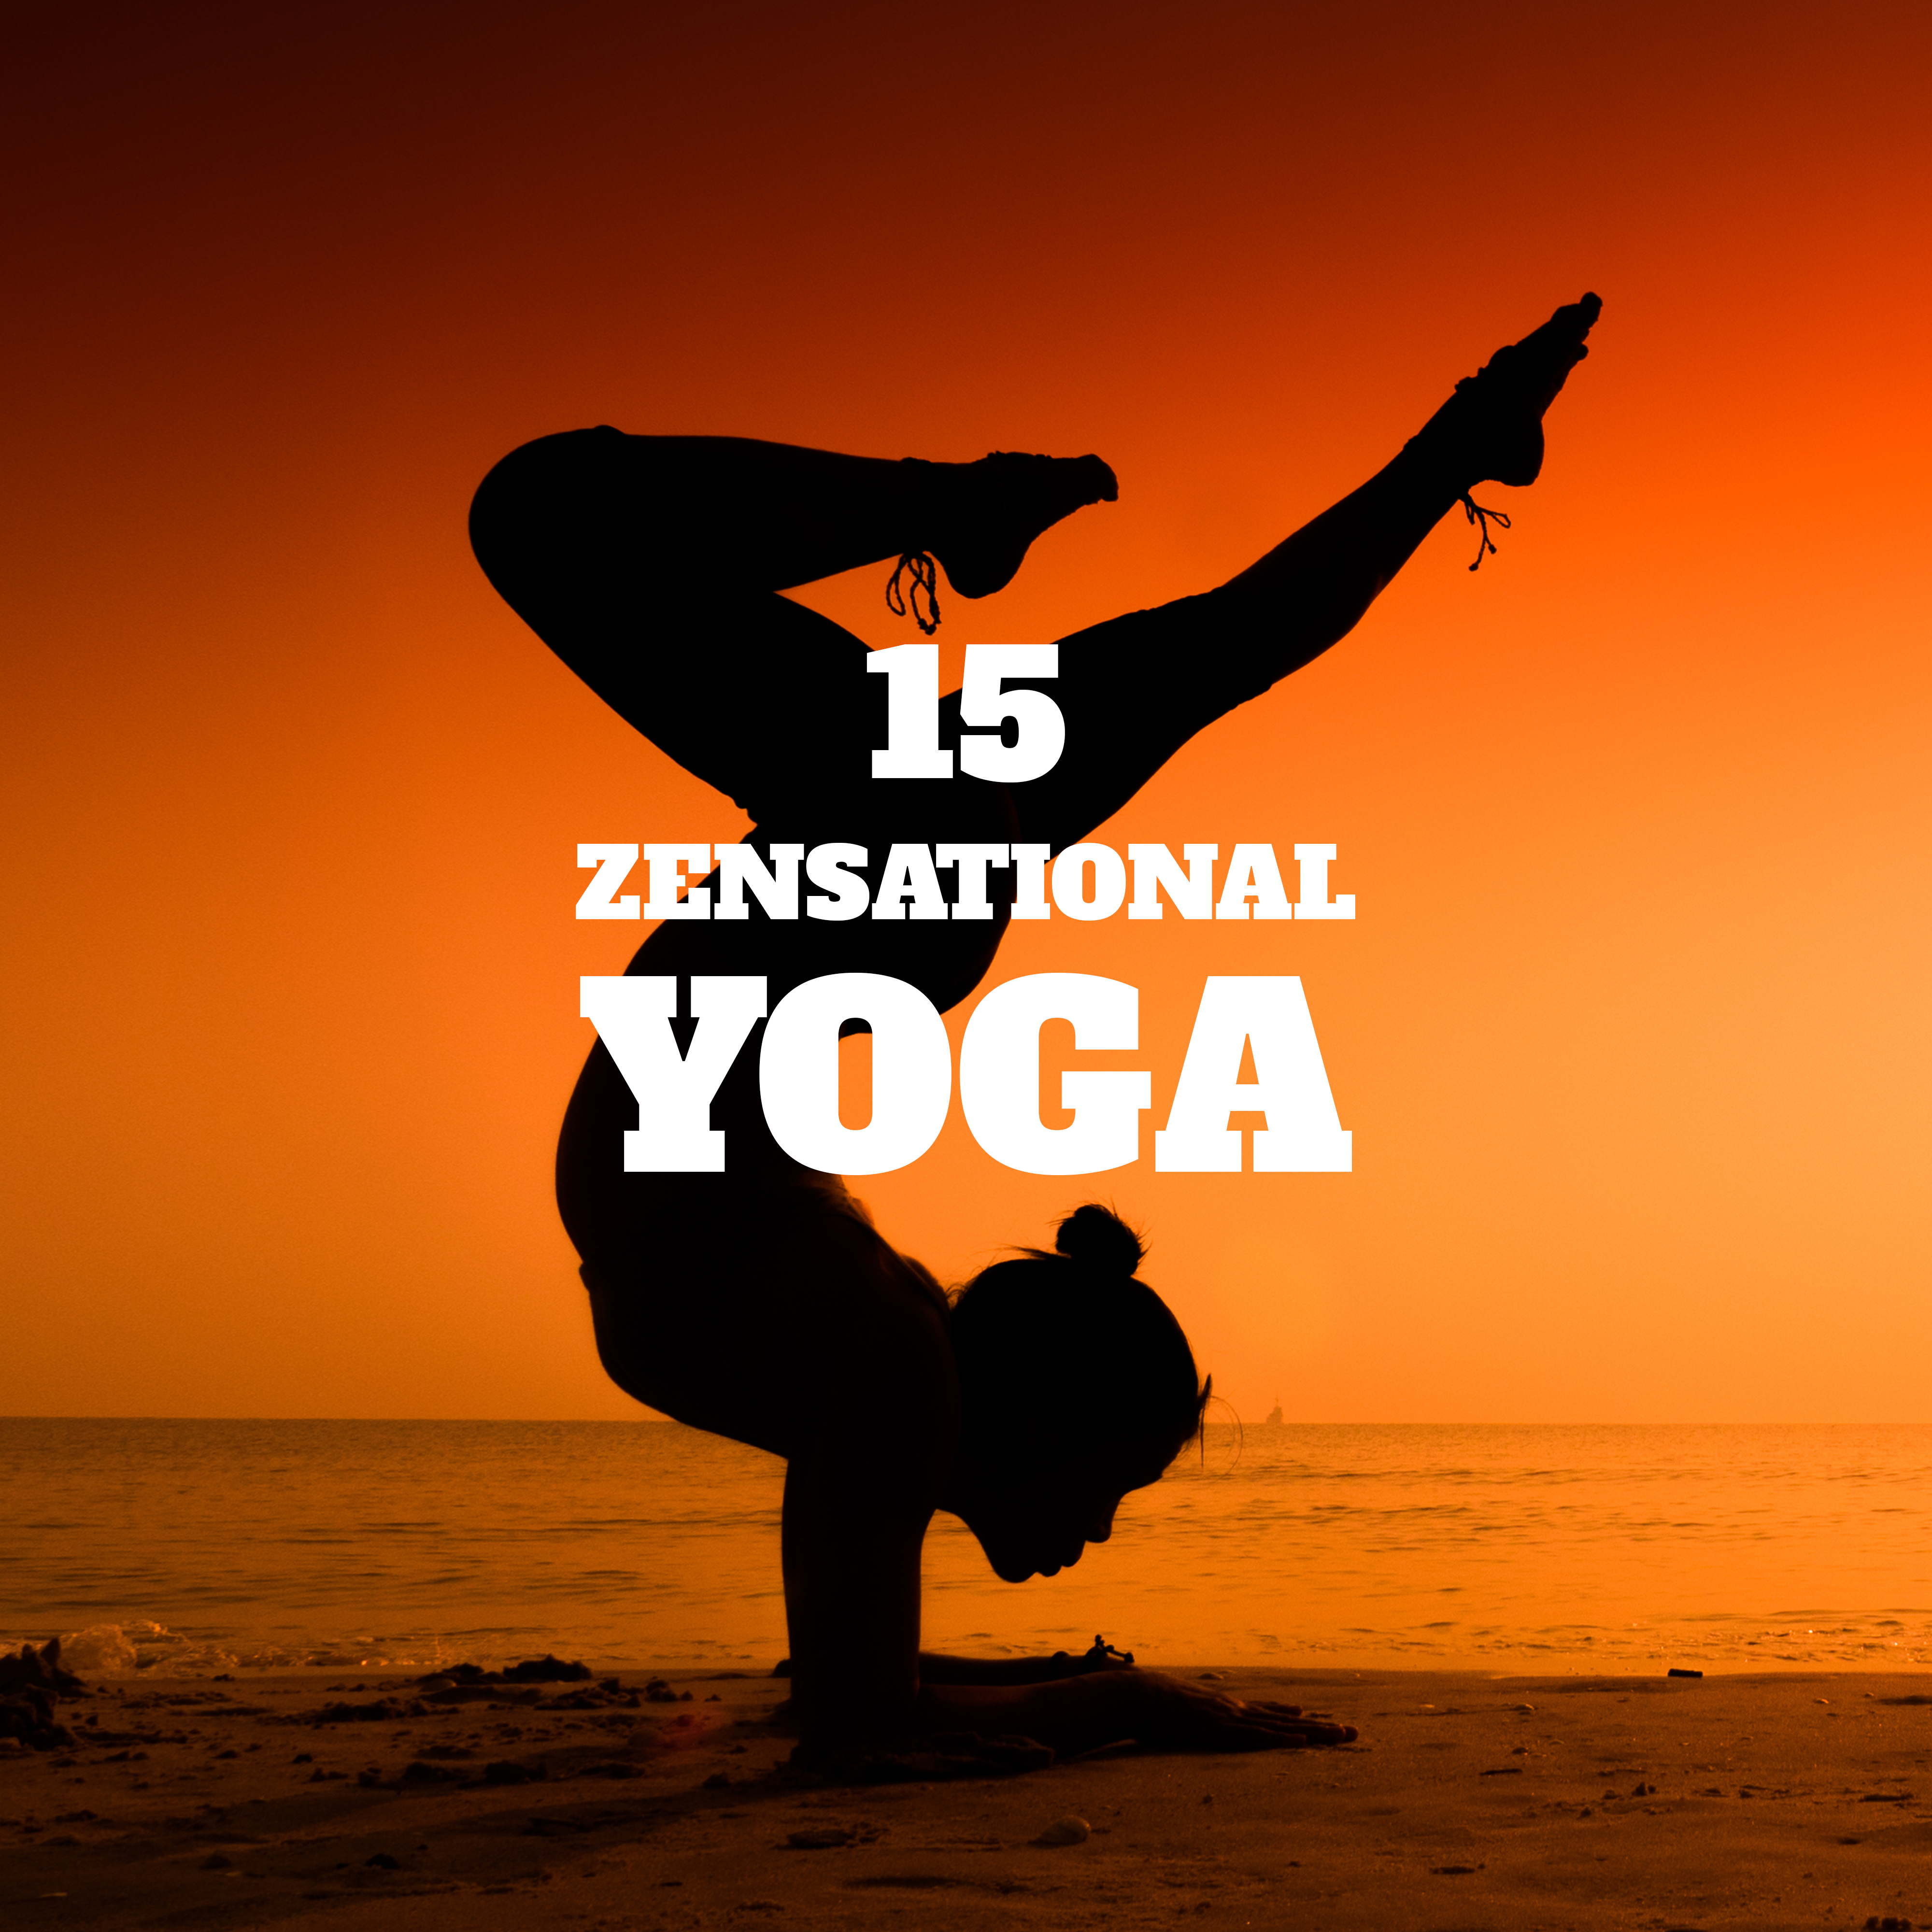 15 Zensational Yoga